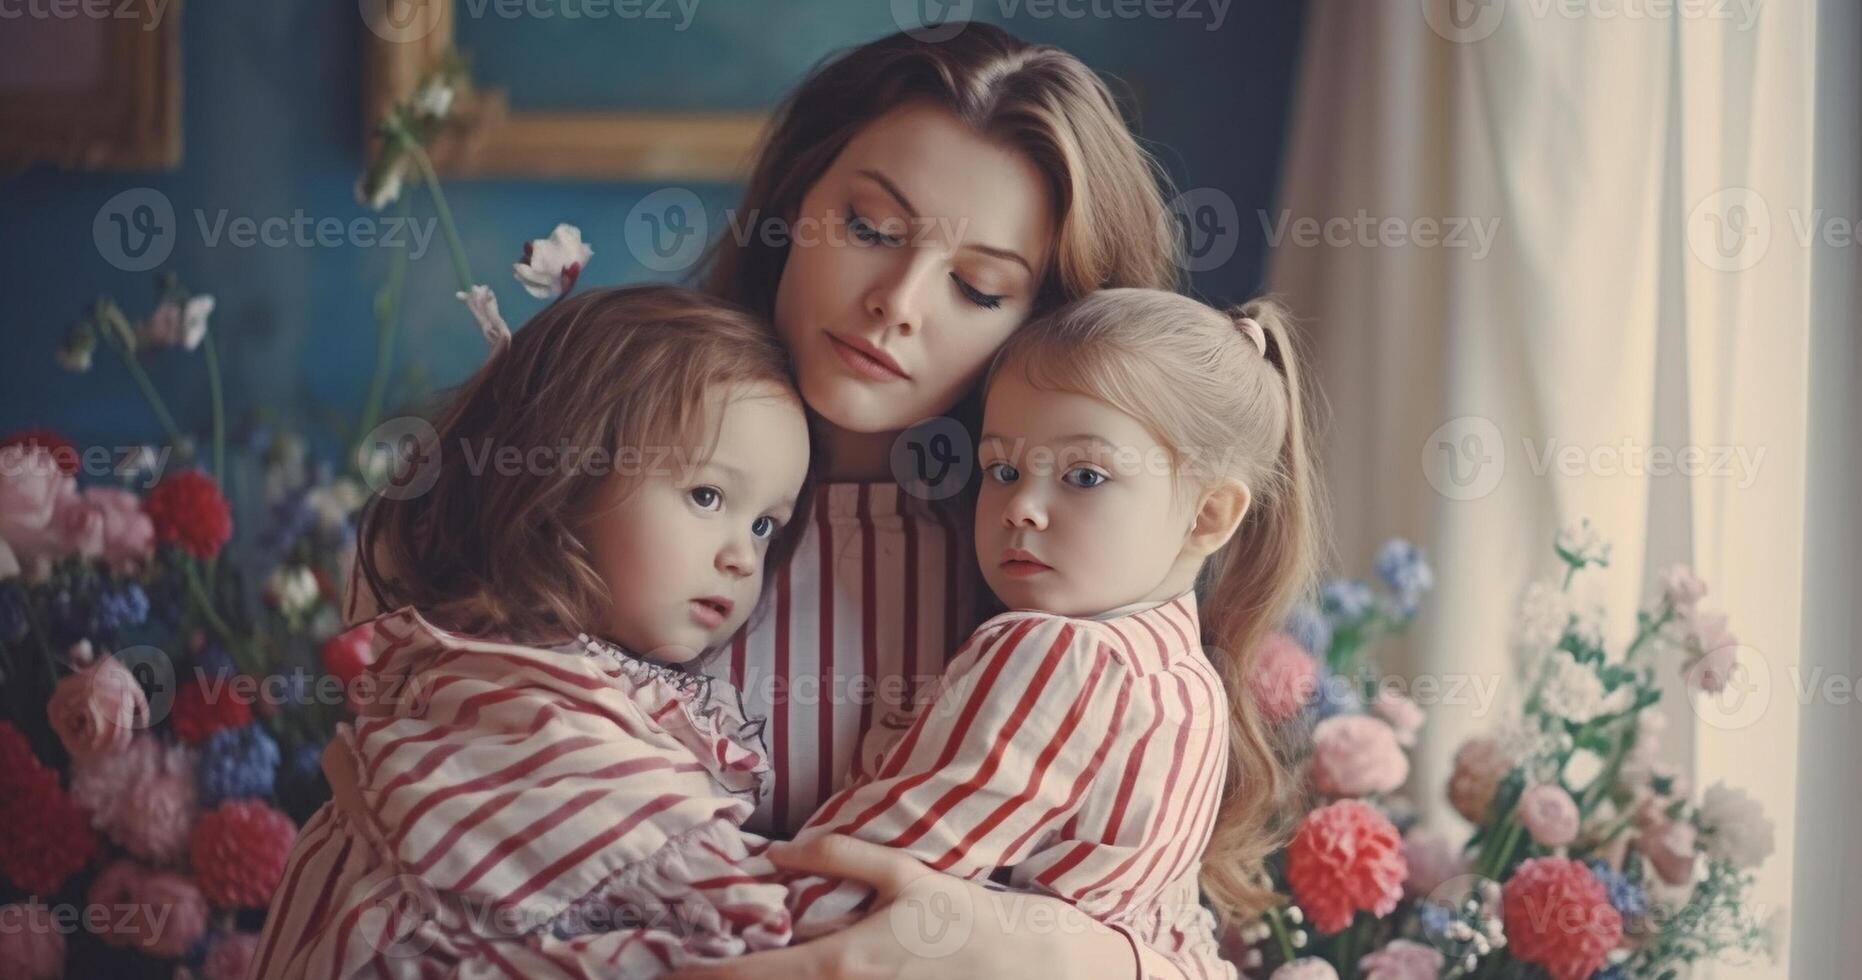 ai generativ Mutter Tag Konzept Liebe von Mutter und Töchter froh Mama ist halten nett Blumen und ist Empfang Kuss von ihr zwei Töchter Jahrgang Filter foto